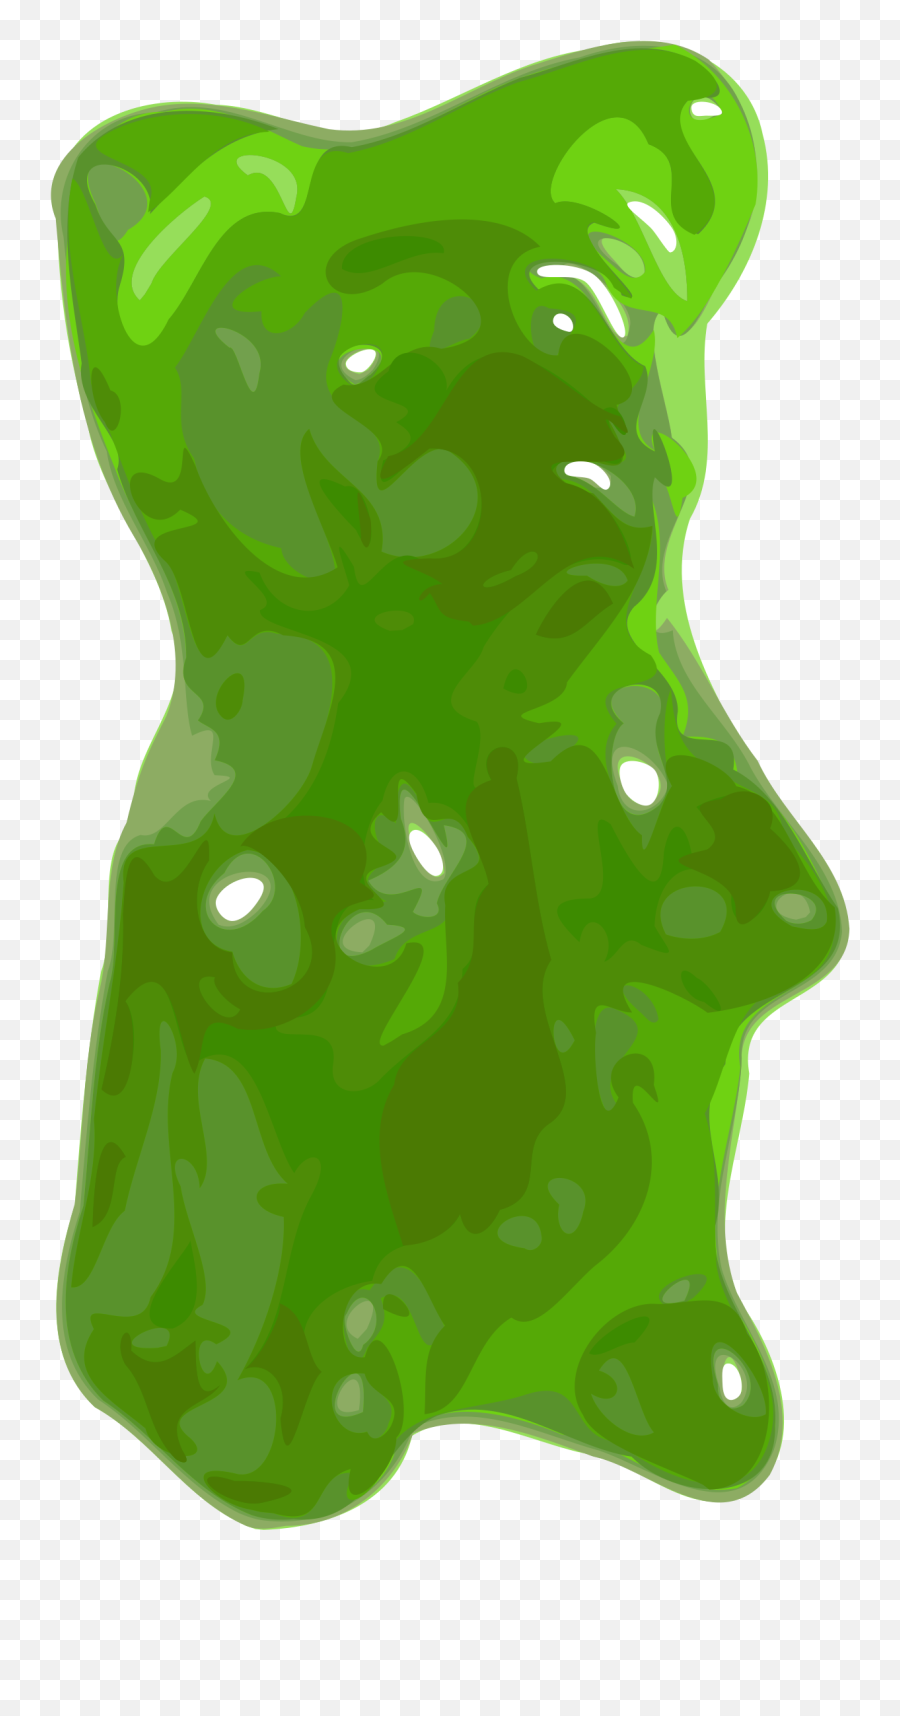 Gummi Candy - Green Gummy Bear Transparent Background Emoji,Gummy Bear Emoji